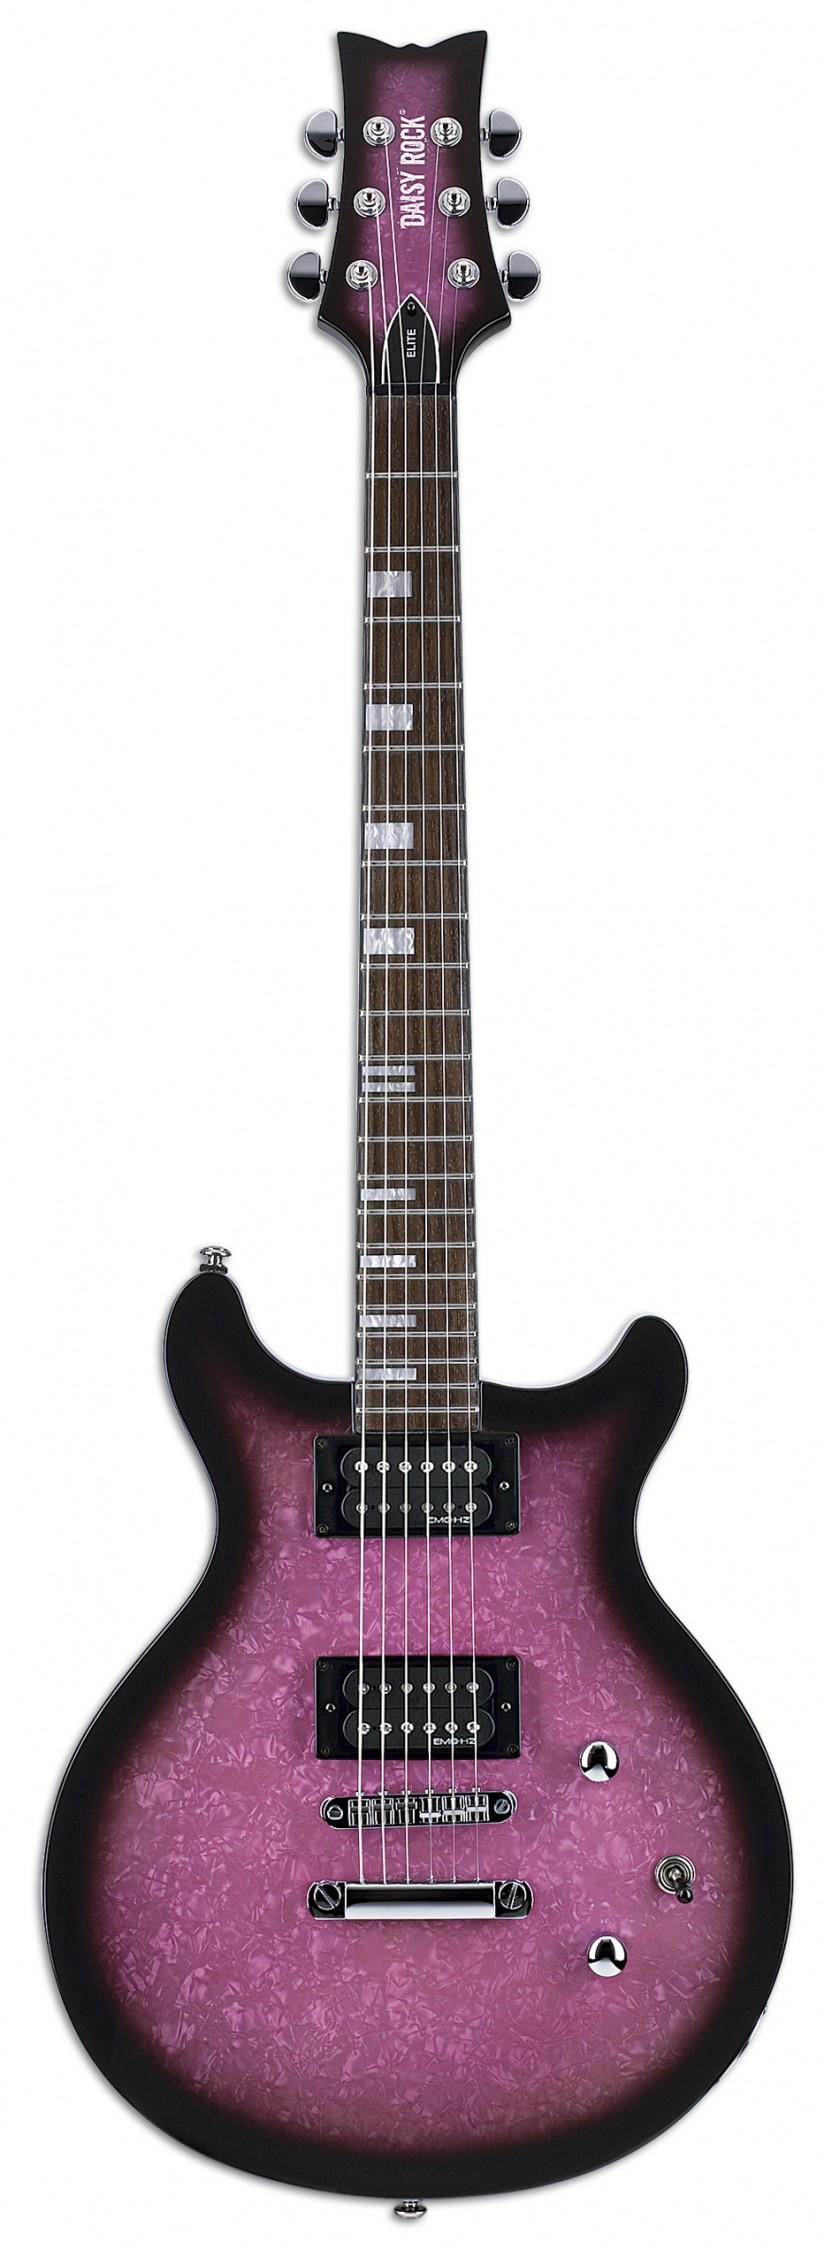 デイジー・ロック・ギターおよびベース15モデルを発売開始 | News 